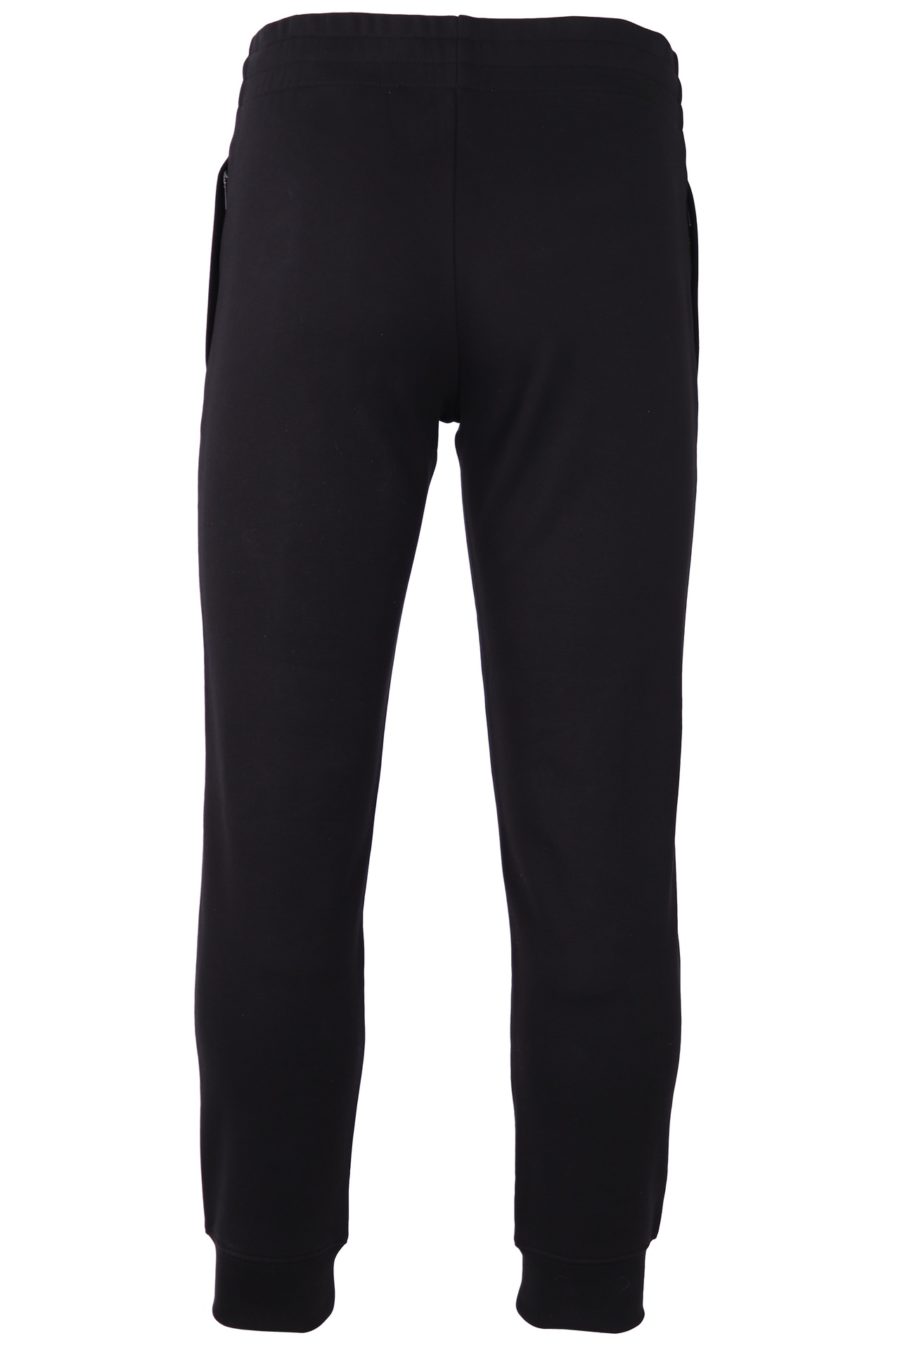 Pantalón de chándal Moschino negro con logo blanco - 72ce134705ed84e21896dd012b181dc99d0d3496